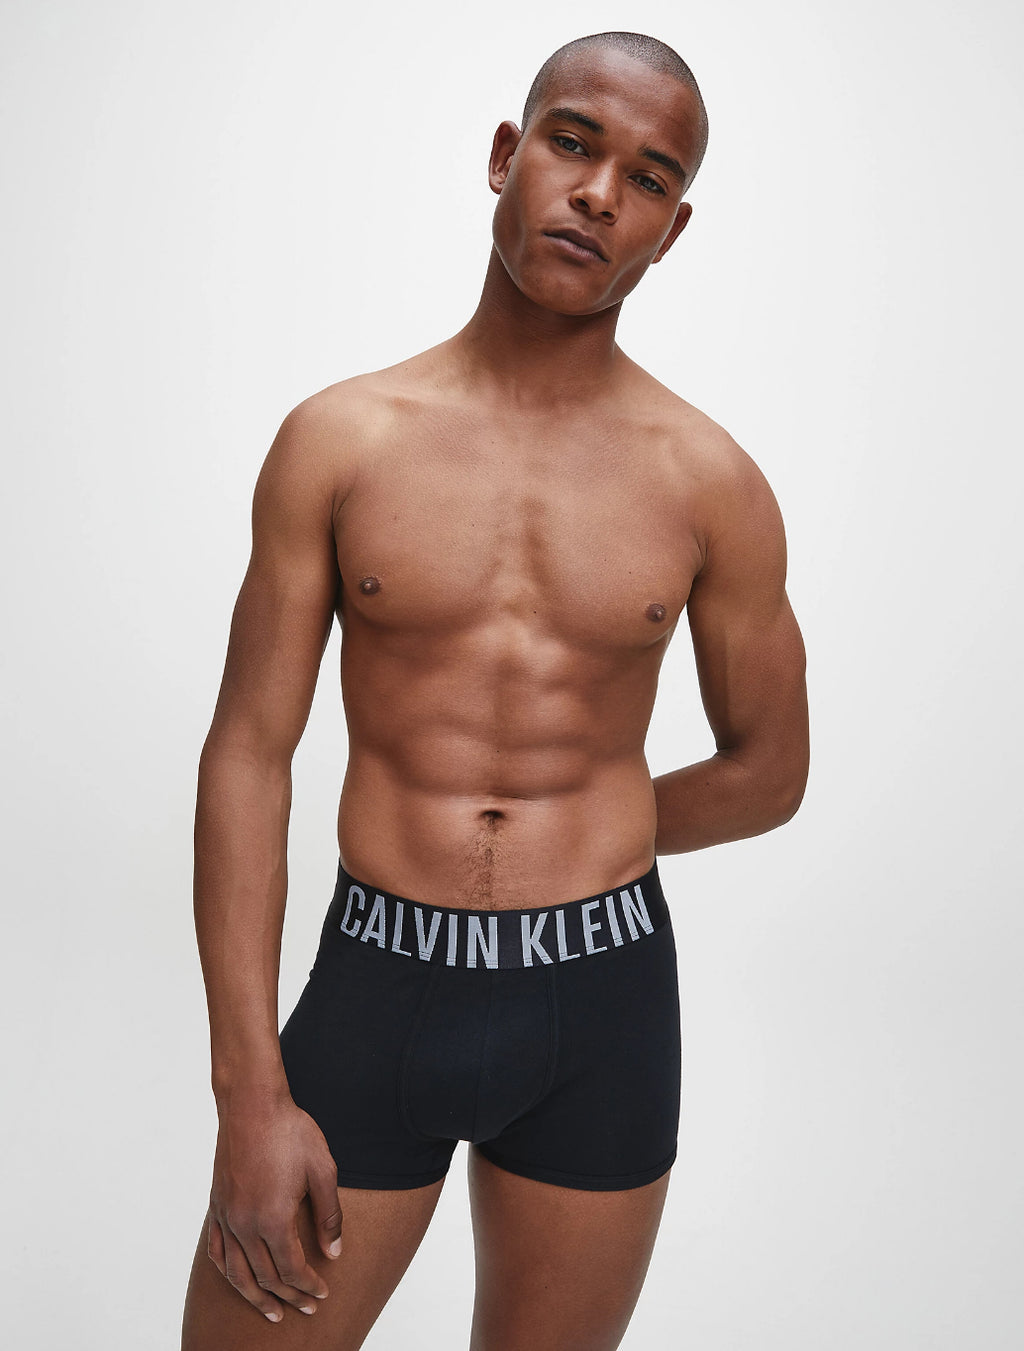 Calvin Klein, Underwear Gift Set, Black